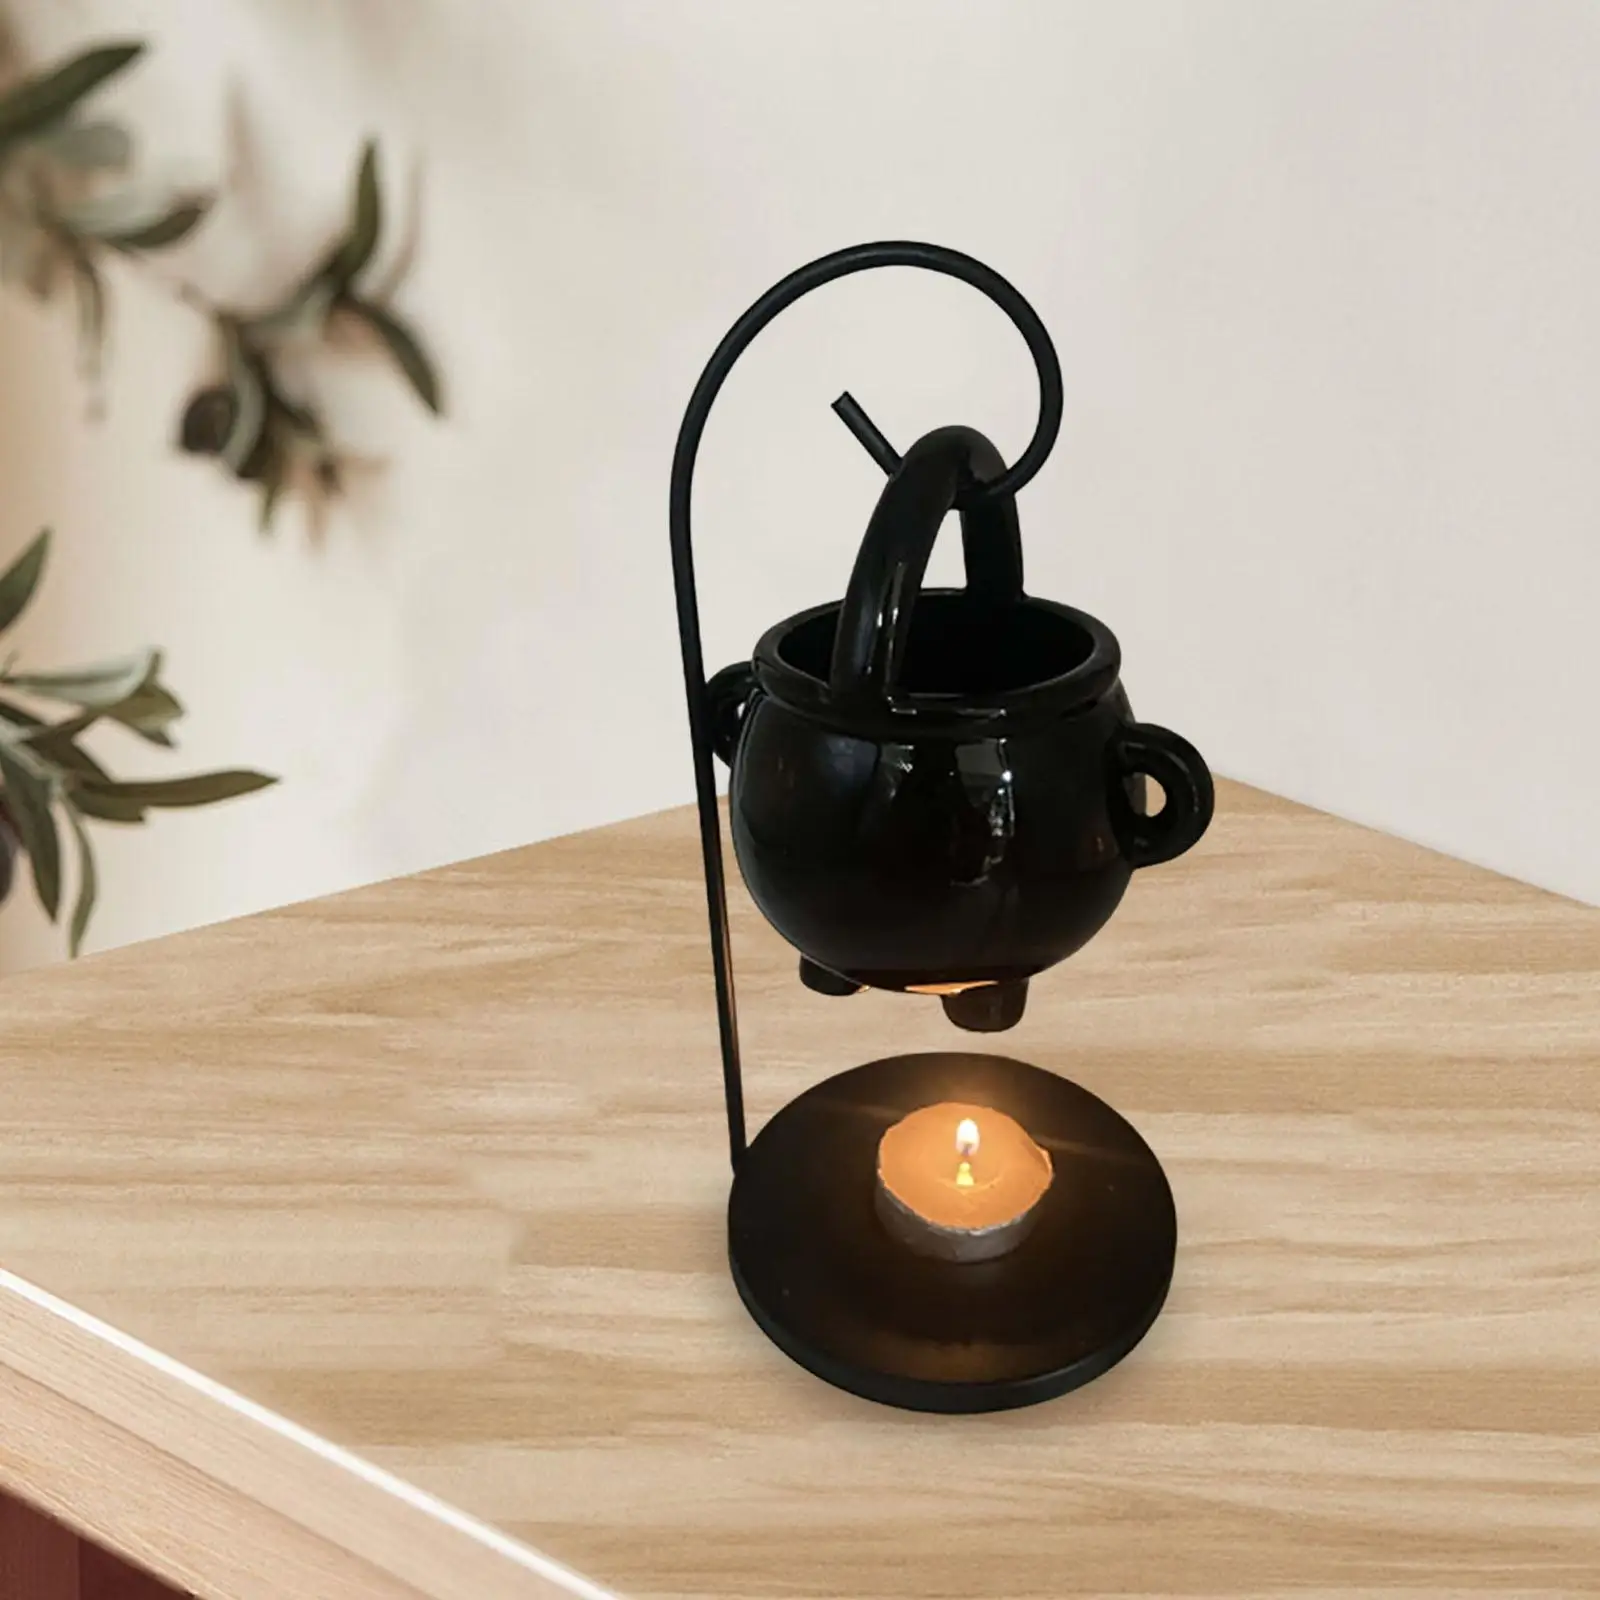 Hanging Tealight Candles Holder Melt Fragrance Gift Warmer Ceramic Essential Oil Burner Diffuser for Yoga Living Room